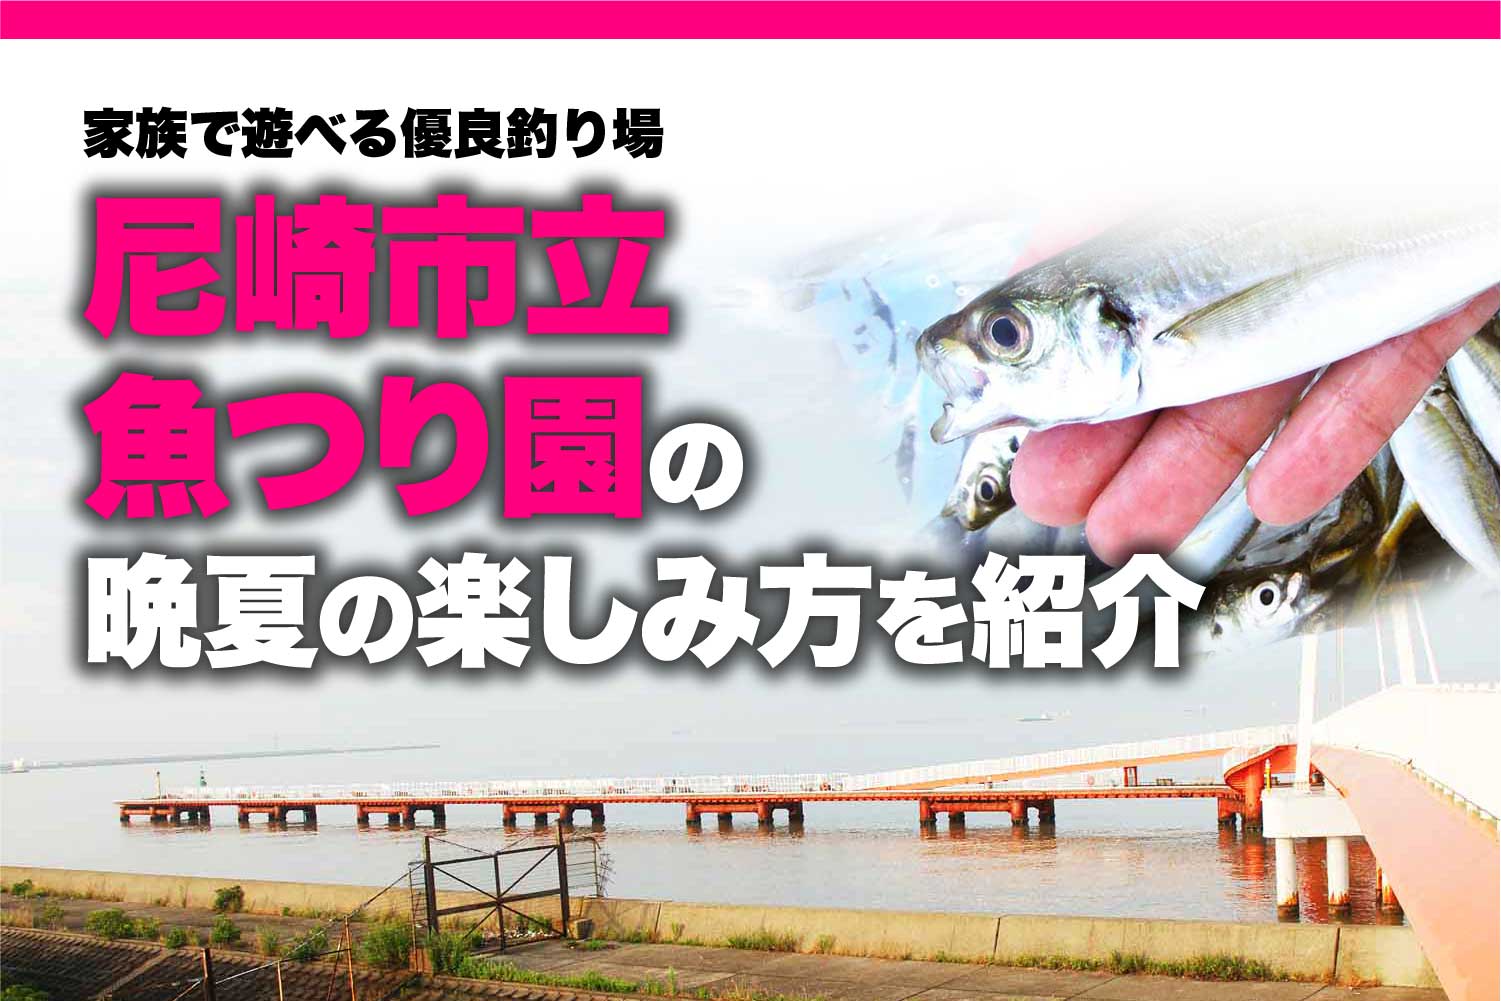 家族で遊べる優良釣り場､尼崎市立魚つり園の晩夏の楽しみ方を紹介